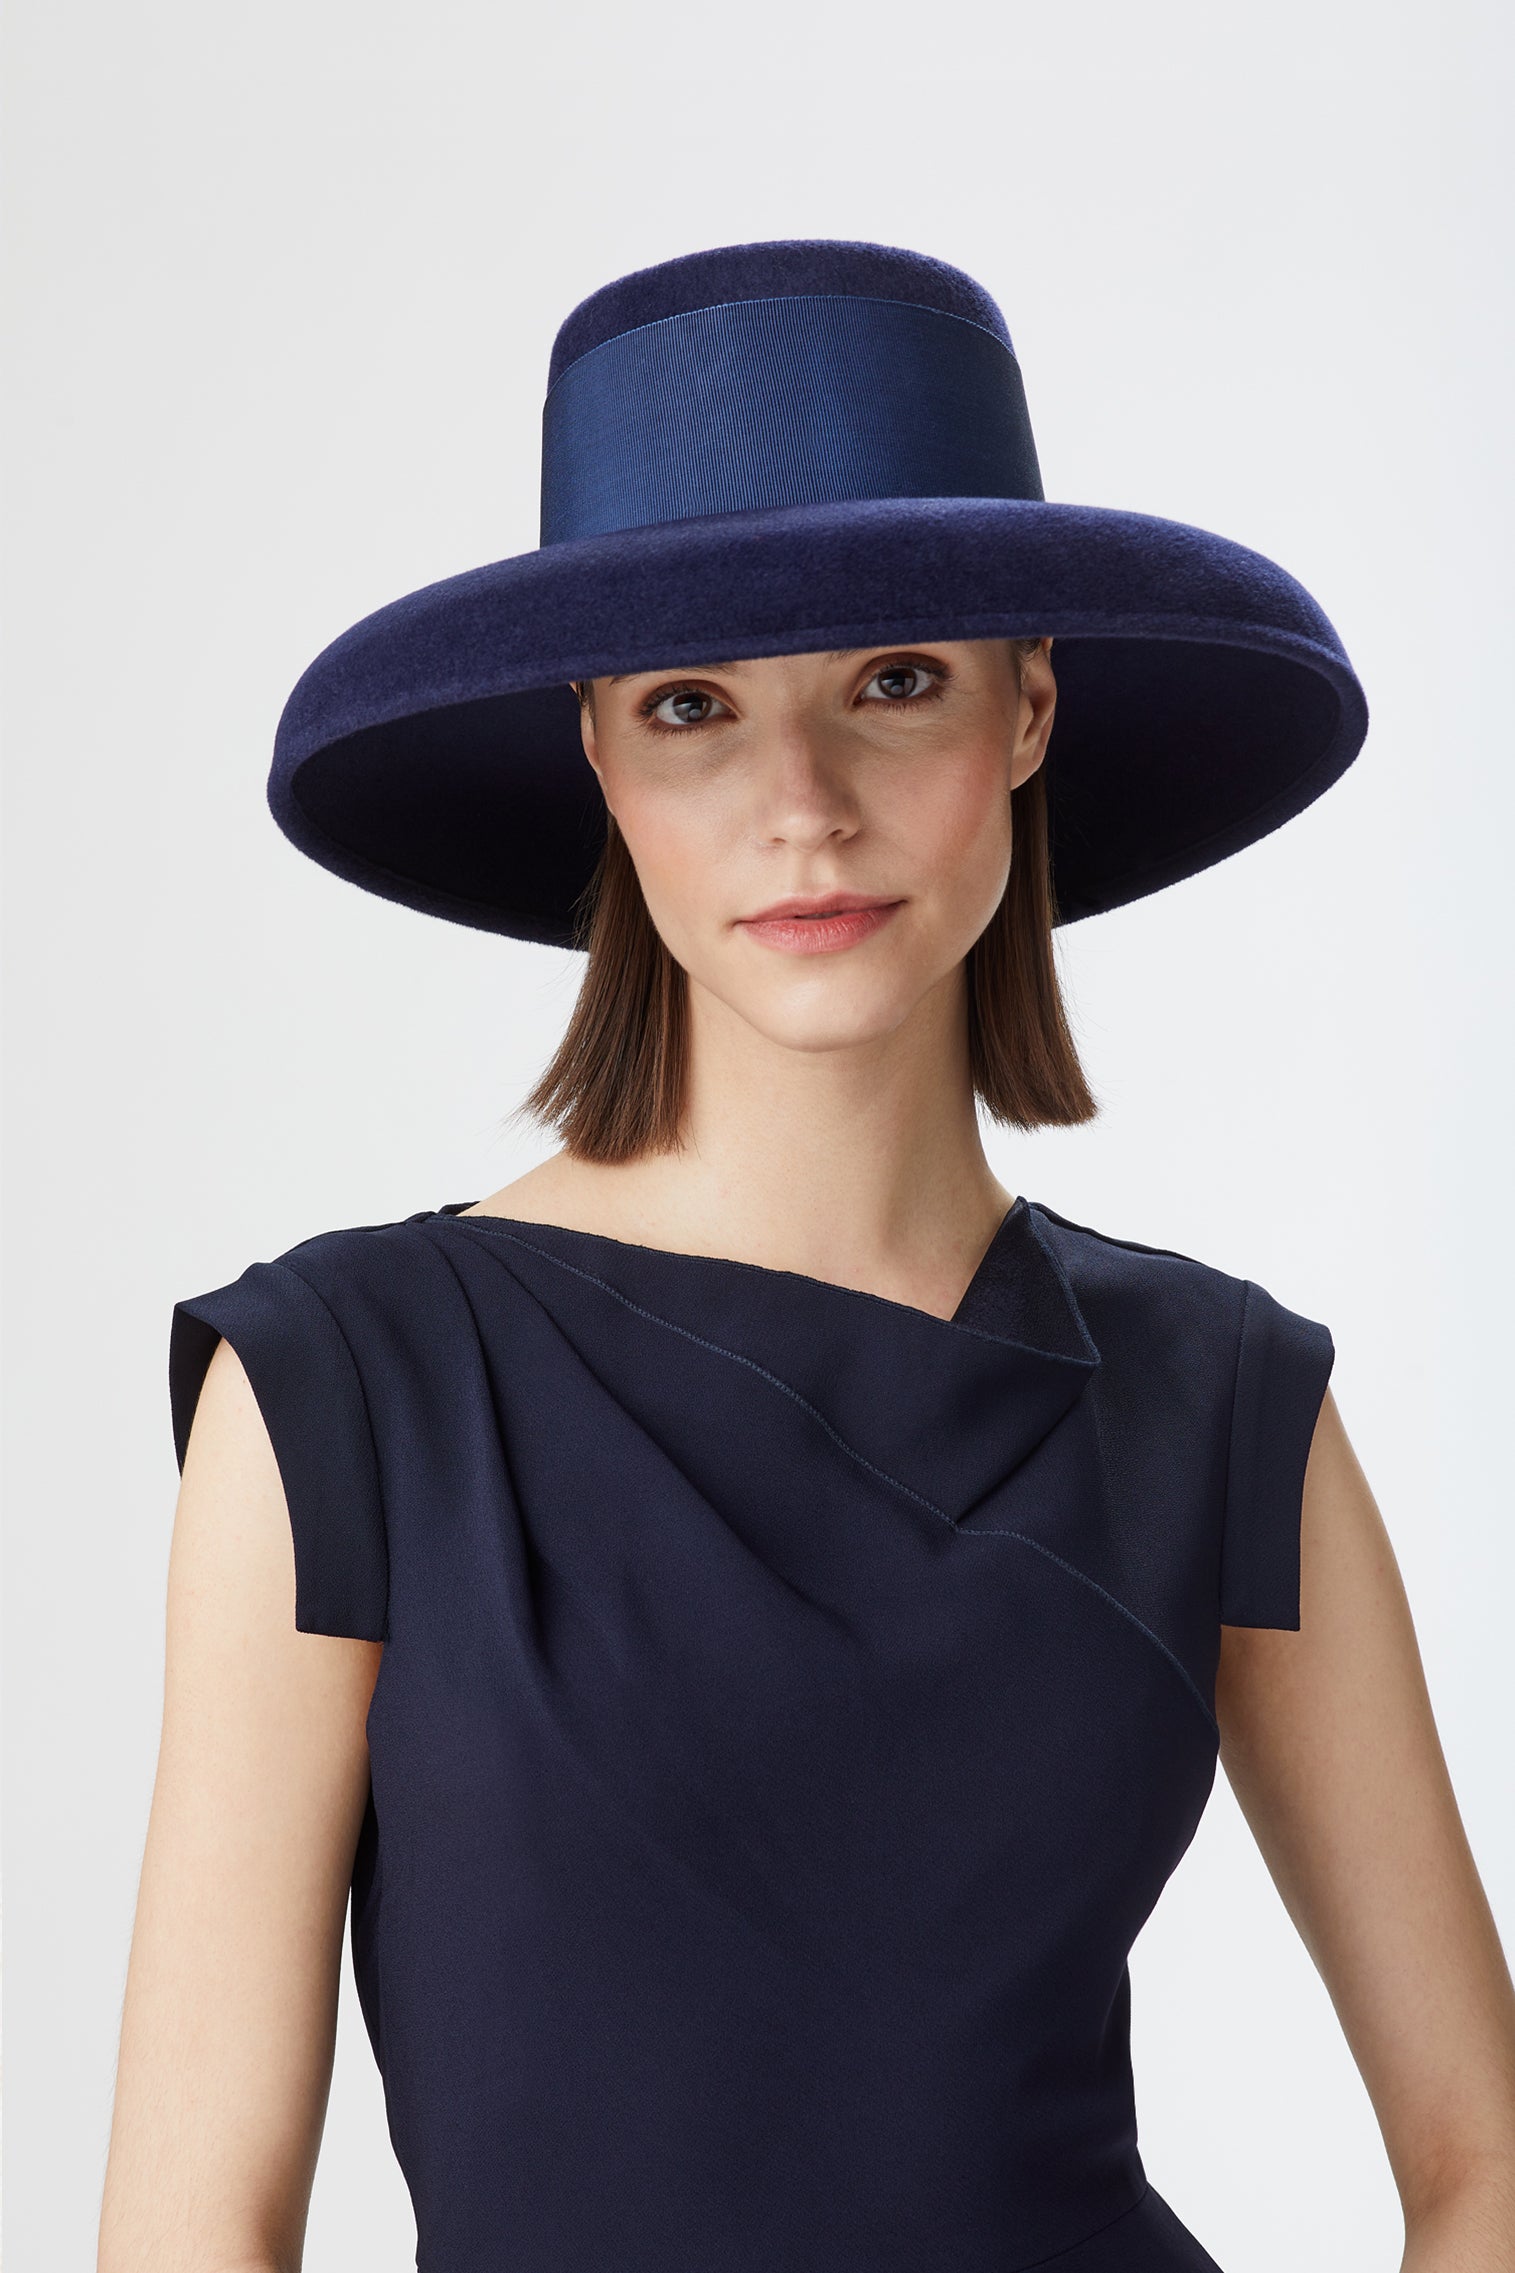 Tiffany Drop-Brim Hat - Black Hats for Women - Lock & Co. Hatters London UK